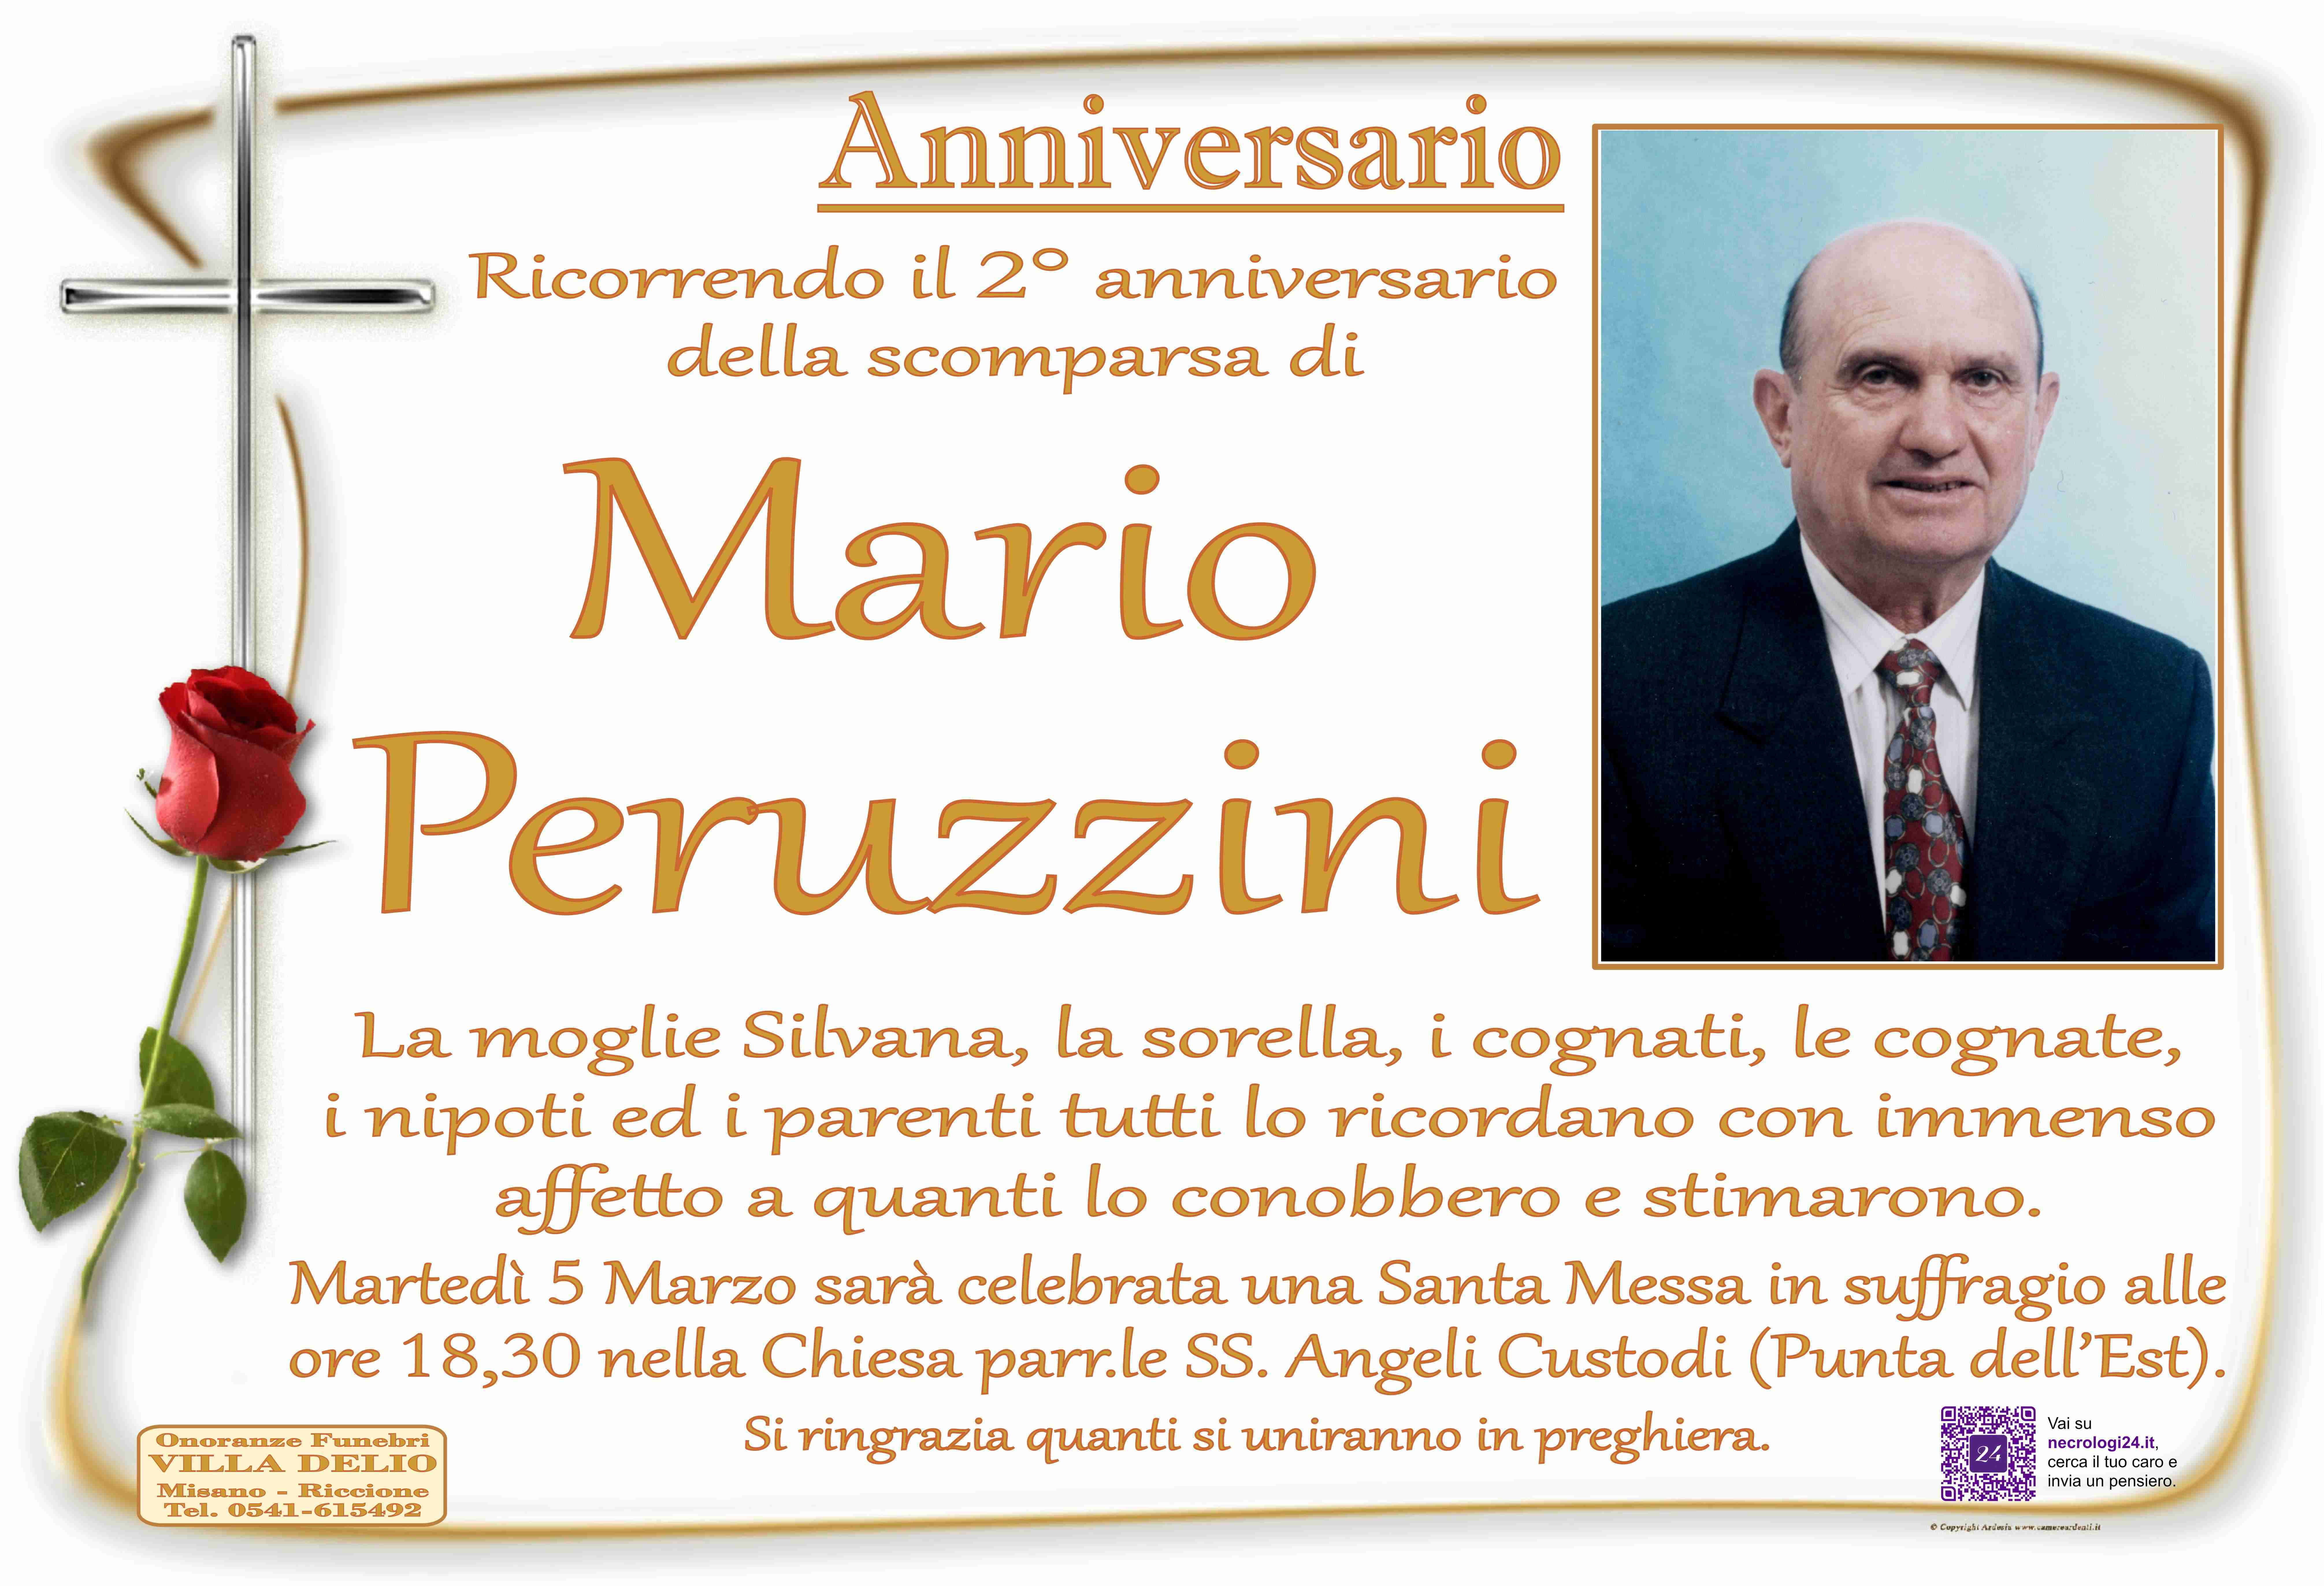 Mario Peruzzini